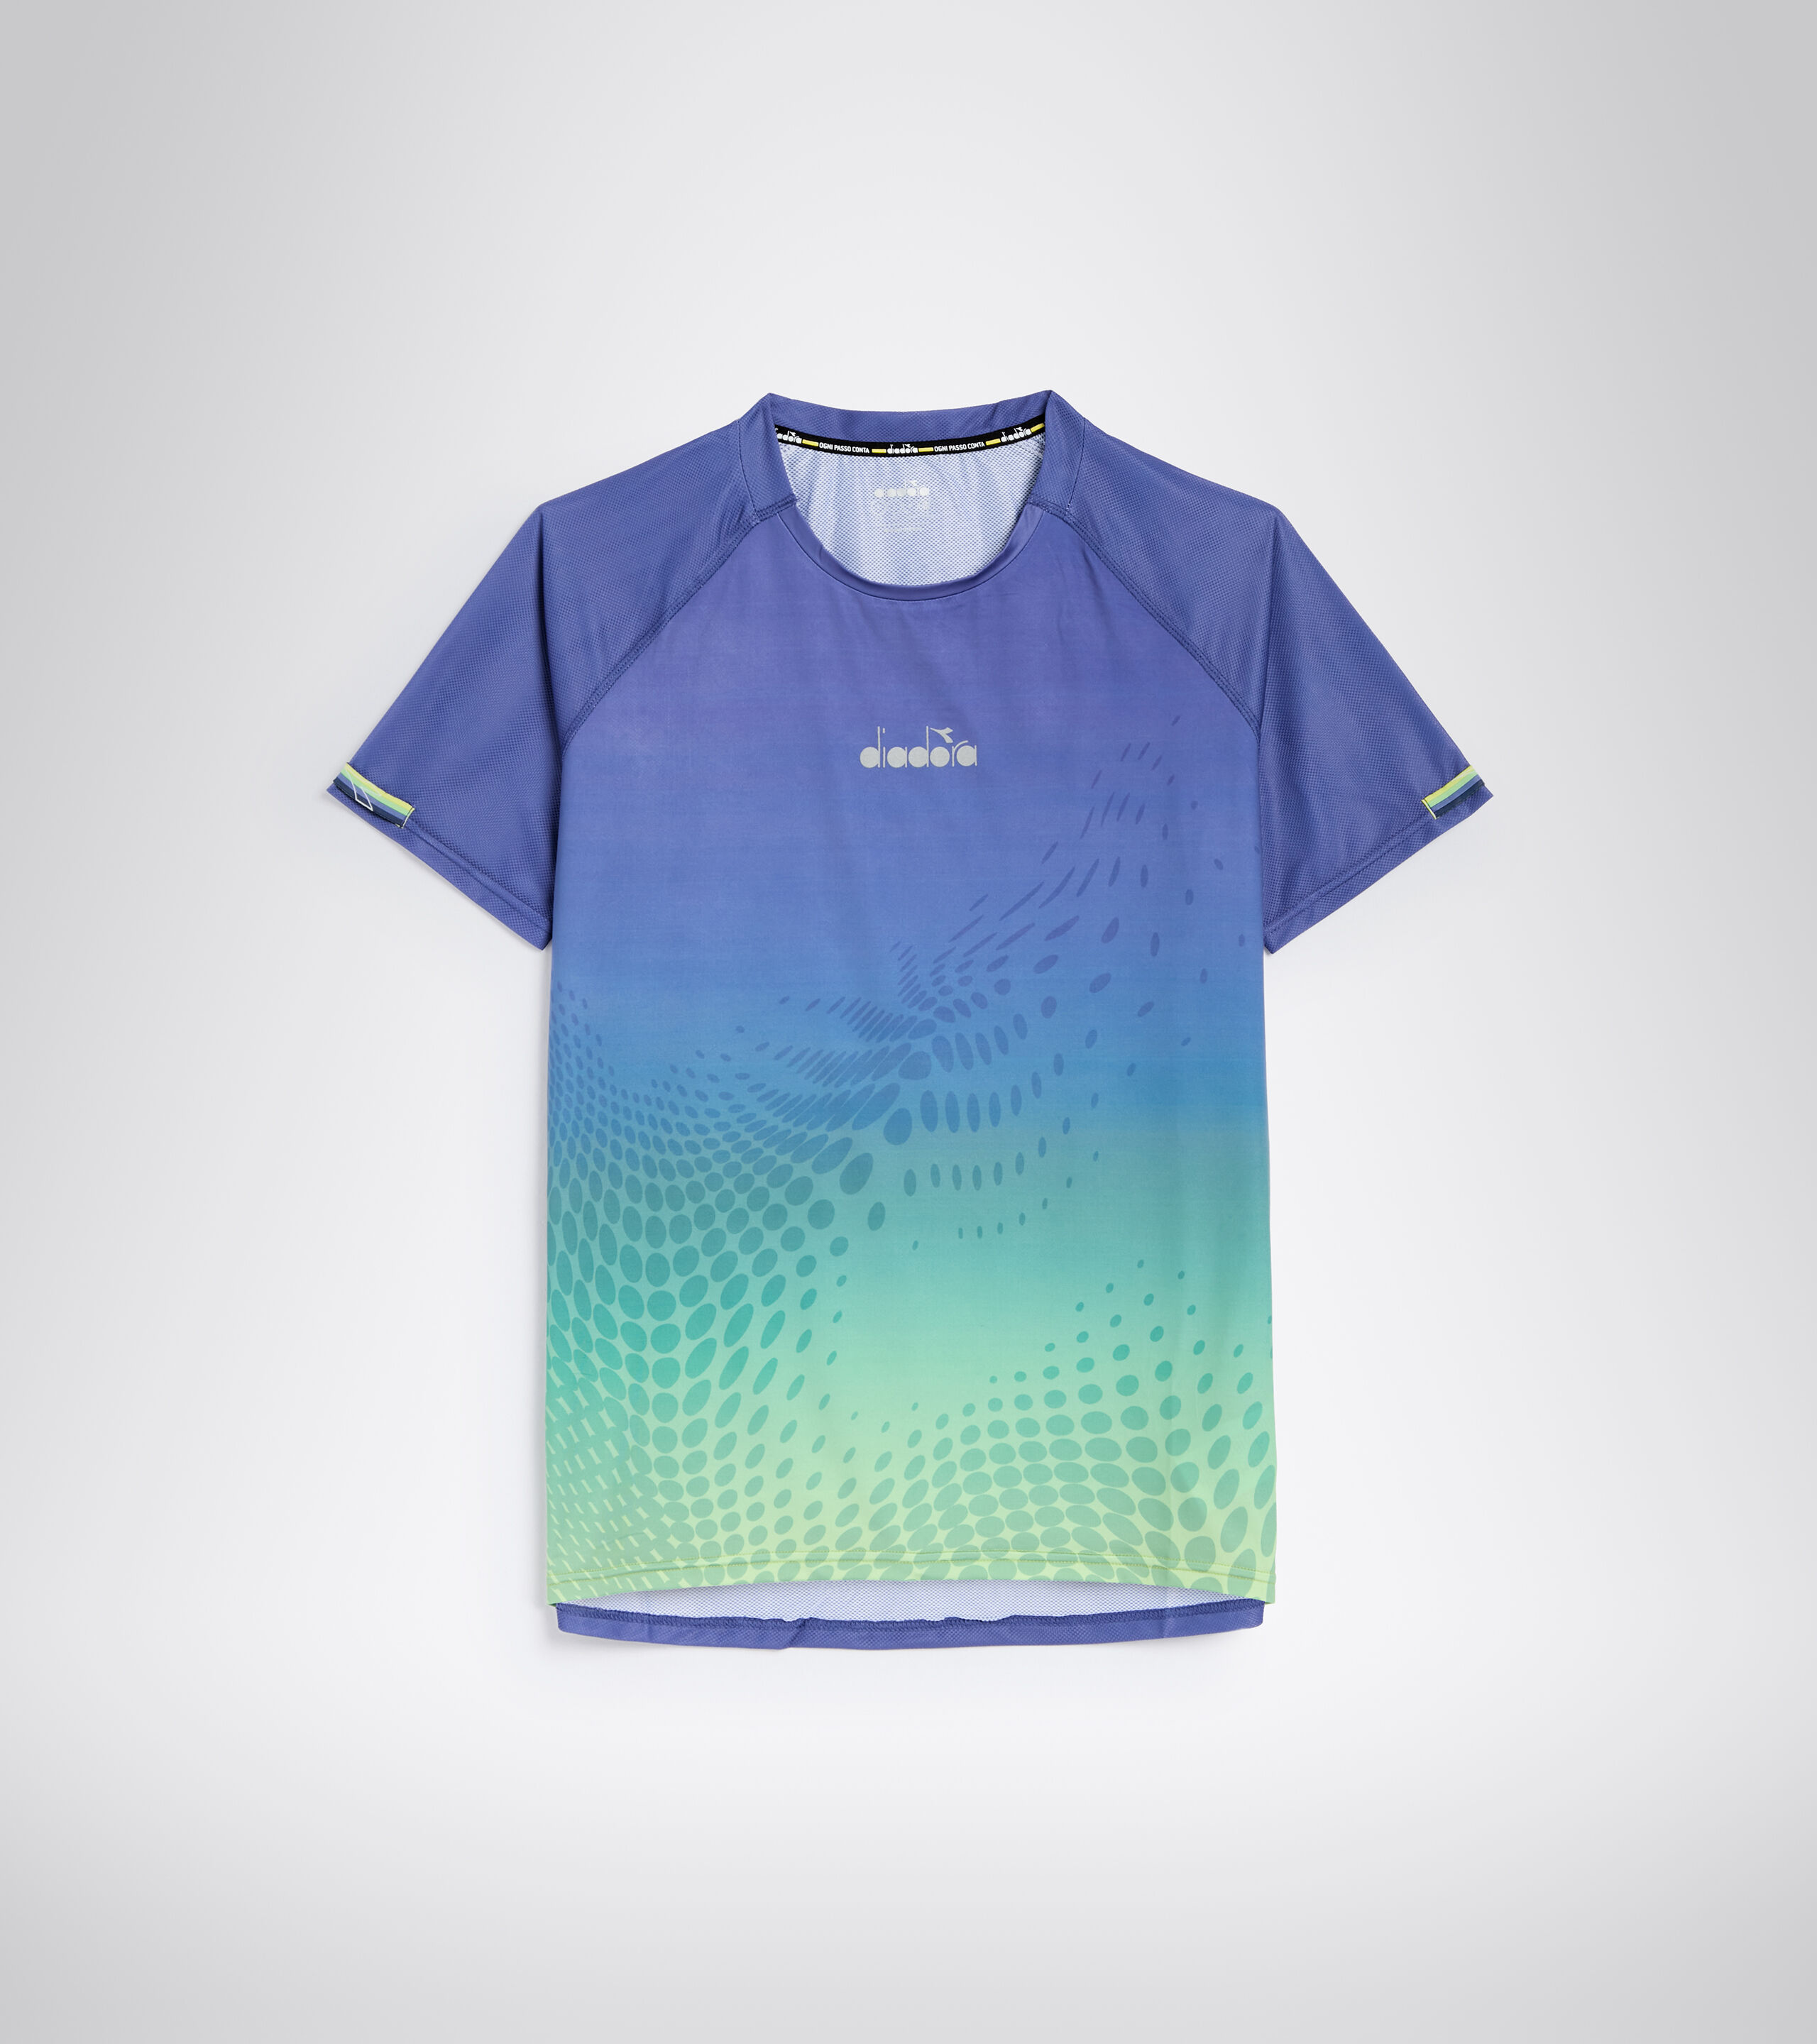 Diadora X-run t-shirt 2019 caballeros de ejecución camisa fitness entrenamiento camisa 102.174174 